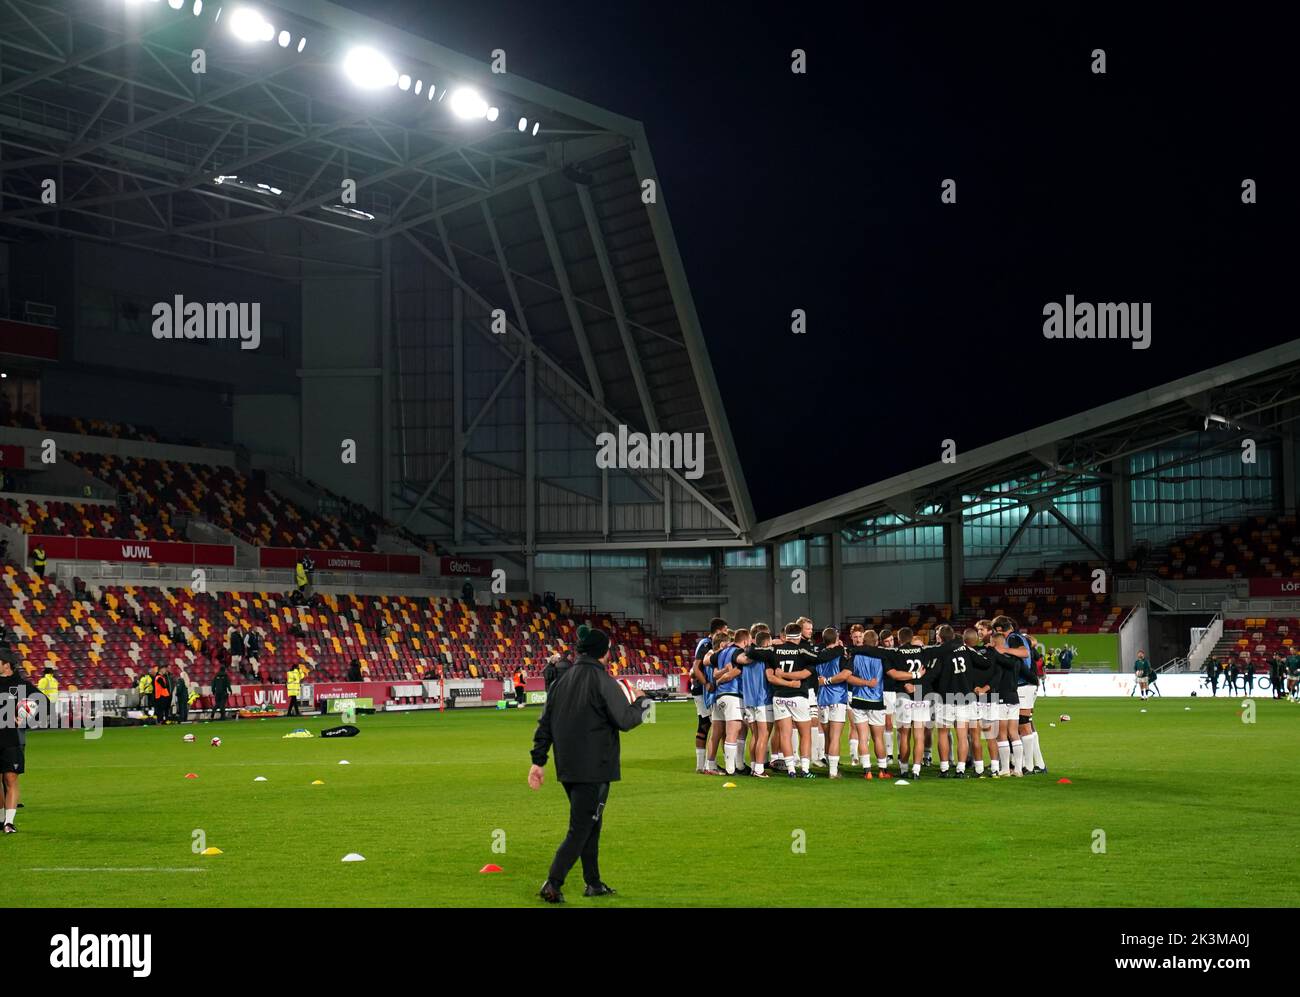 Una vista generale all'interno del campo prima della seconda partita della Premiership Rugby Cup al GTECH Community Stadium, Londra. Data immagine: Martedì 27 settembre 2022. Foto Stock